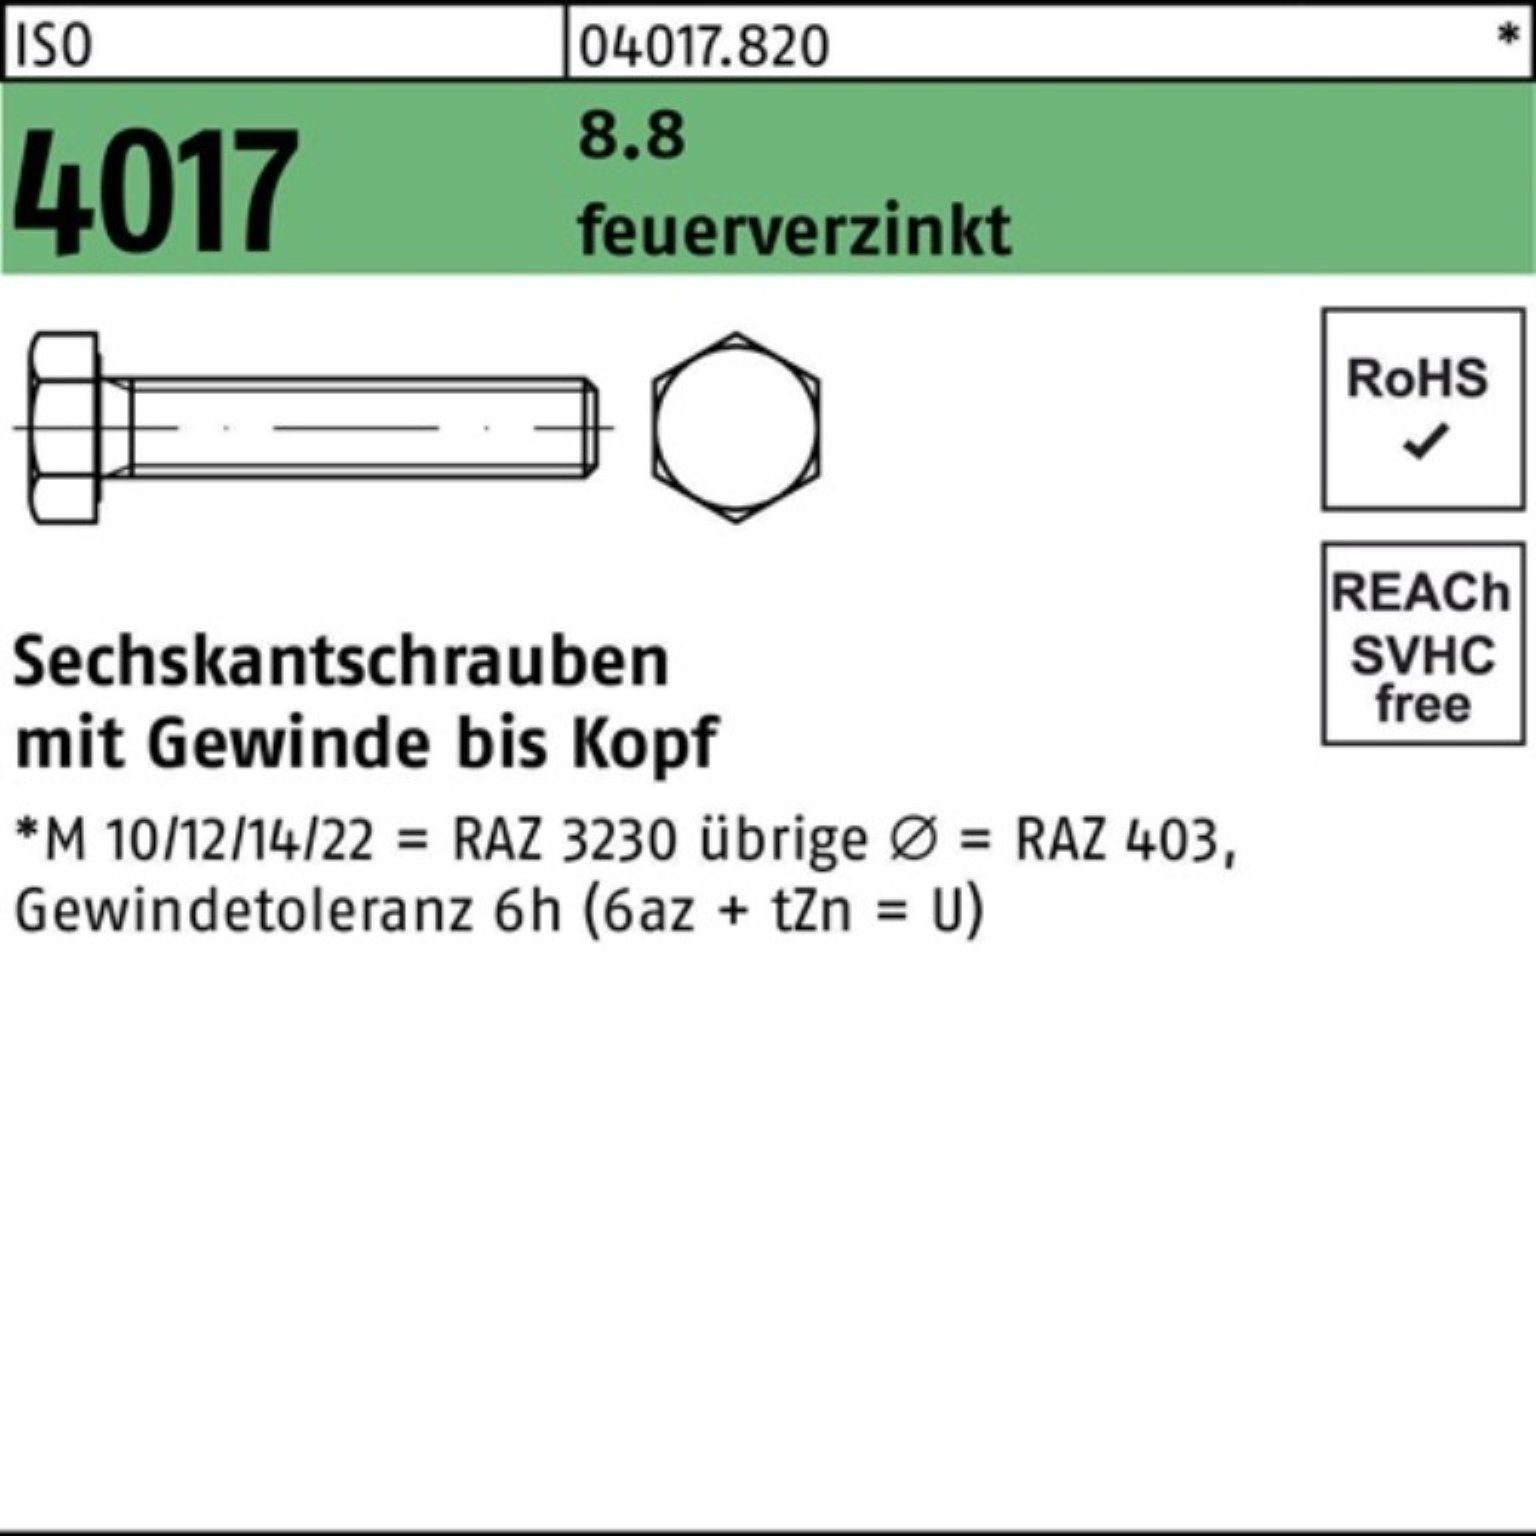 Bufab Sechskantschraube 100er Pack Sechskantschraube ISO 4017 VG M16x 25 8.8 feuerverz. 50 St